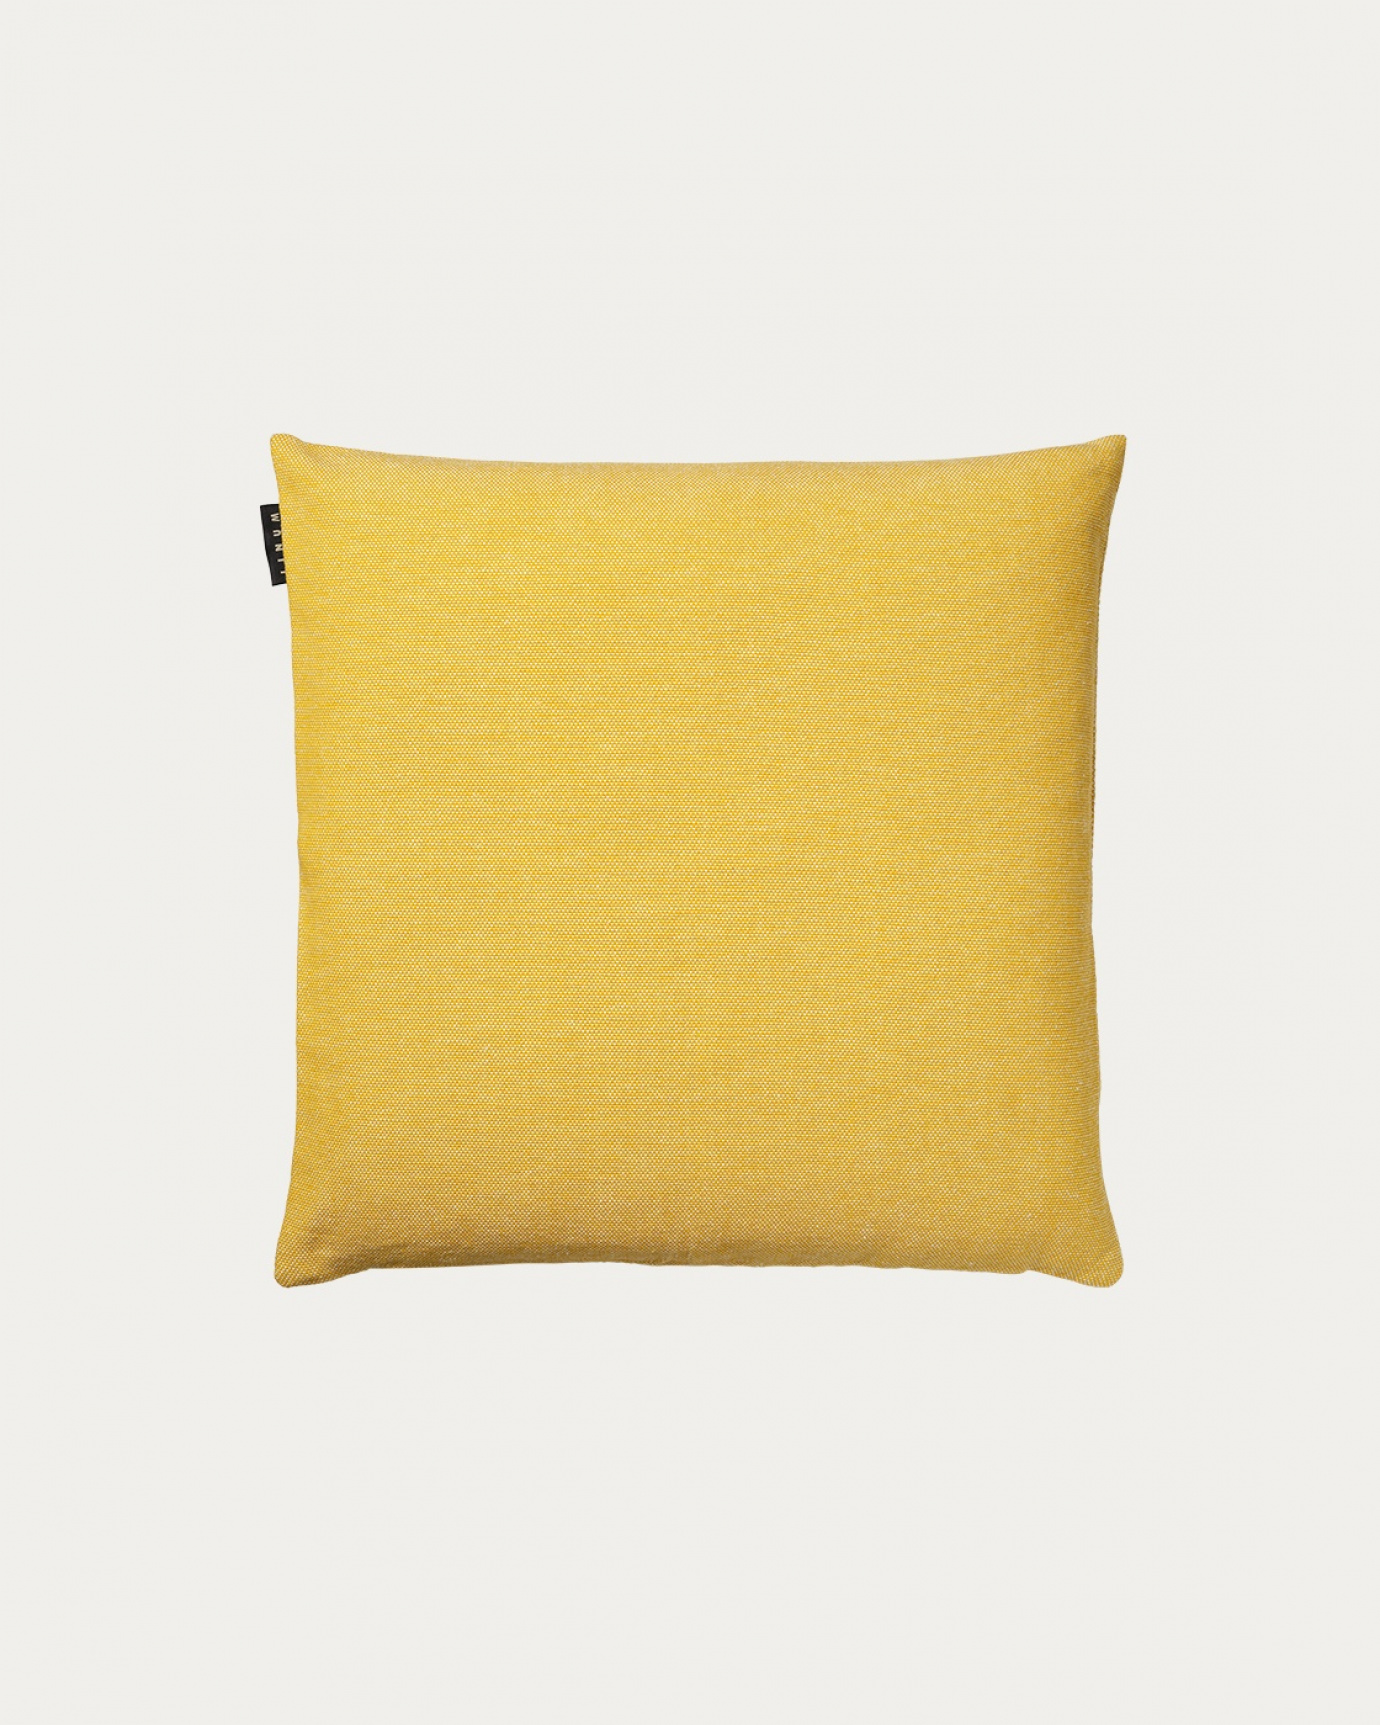 Immagine prodotto giallo mostarda PEPPER copricuscini in morbido cotone di LINUM DESIGN. Facile da lavare e resistente per generazioni. Dimensioni 40x40 cm.